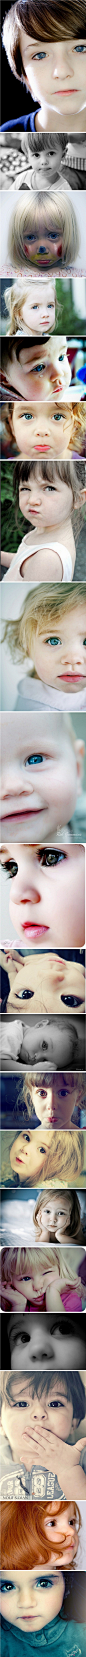 孩子拥有世界上最干净的眼睛